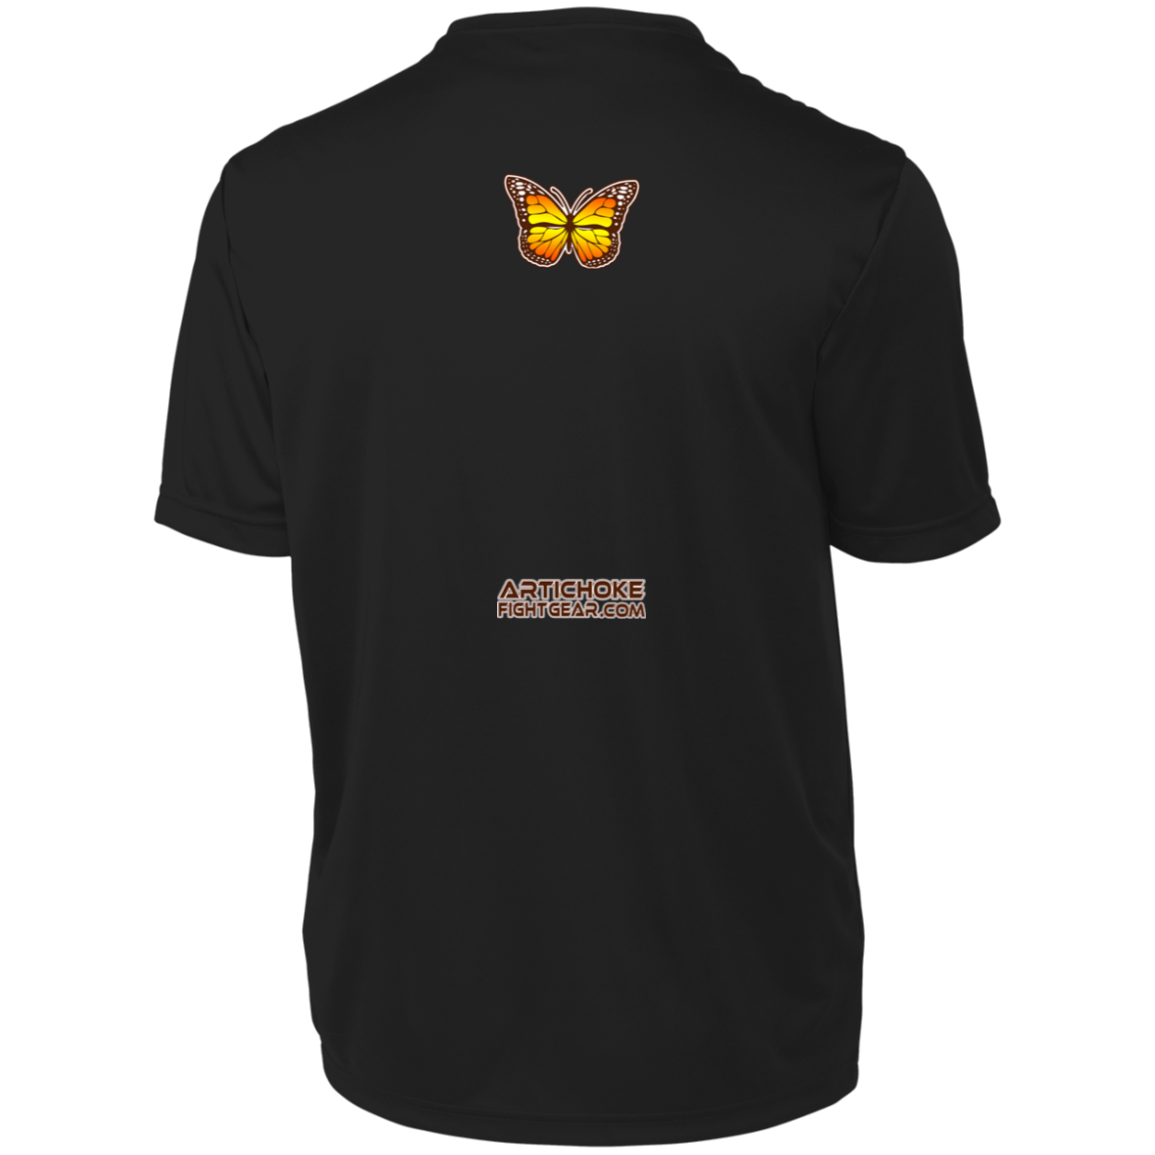 Artichoke Fight Gear Custom Design #6. Lepidopterology (Study of butterflies). Butterfly Guard. Men's Moisture-Wicking Tee